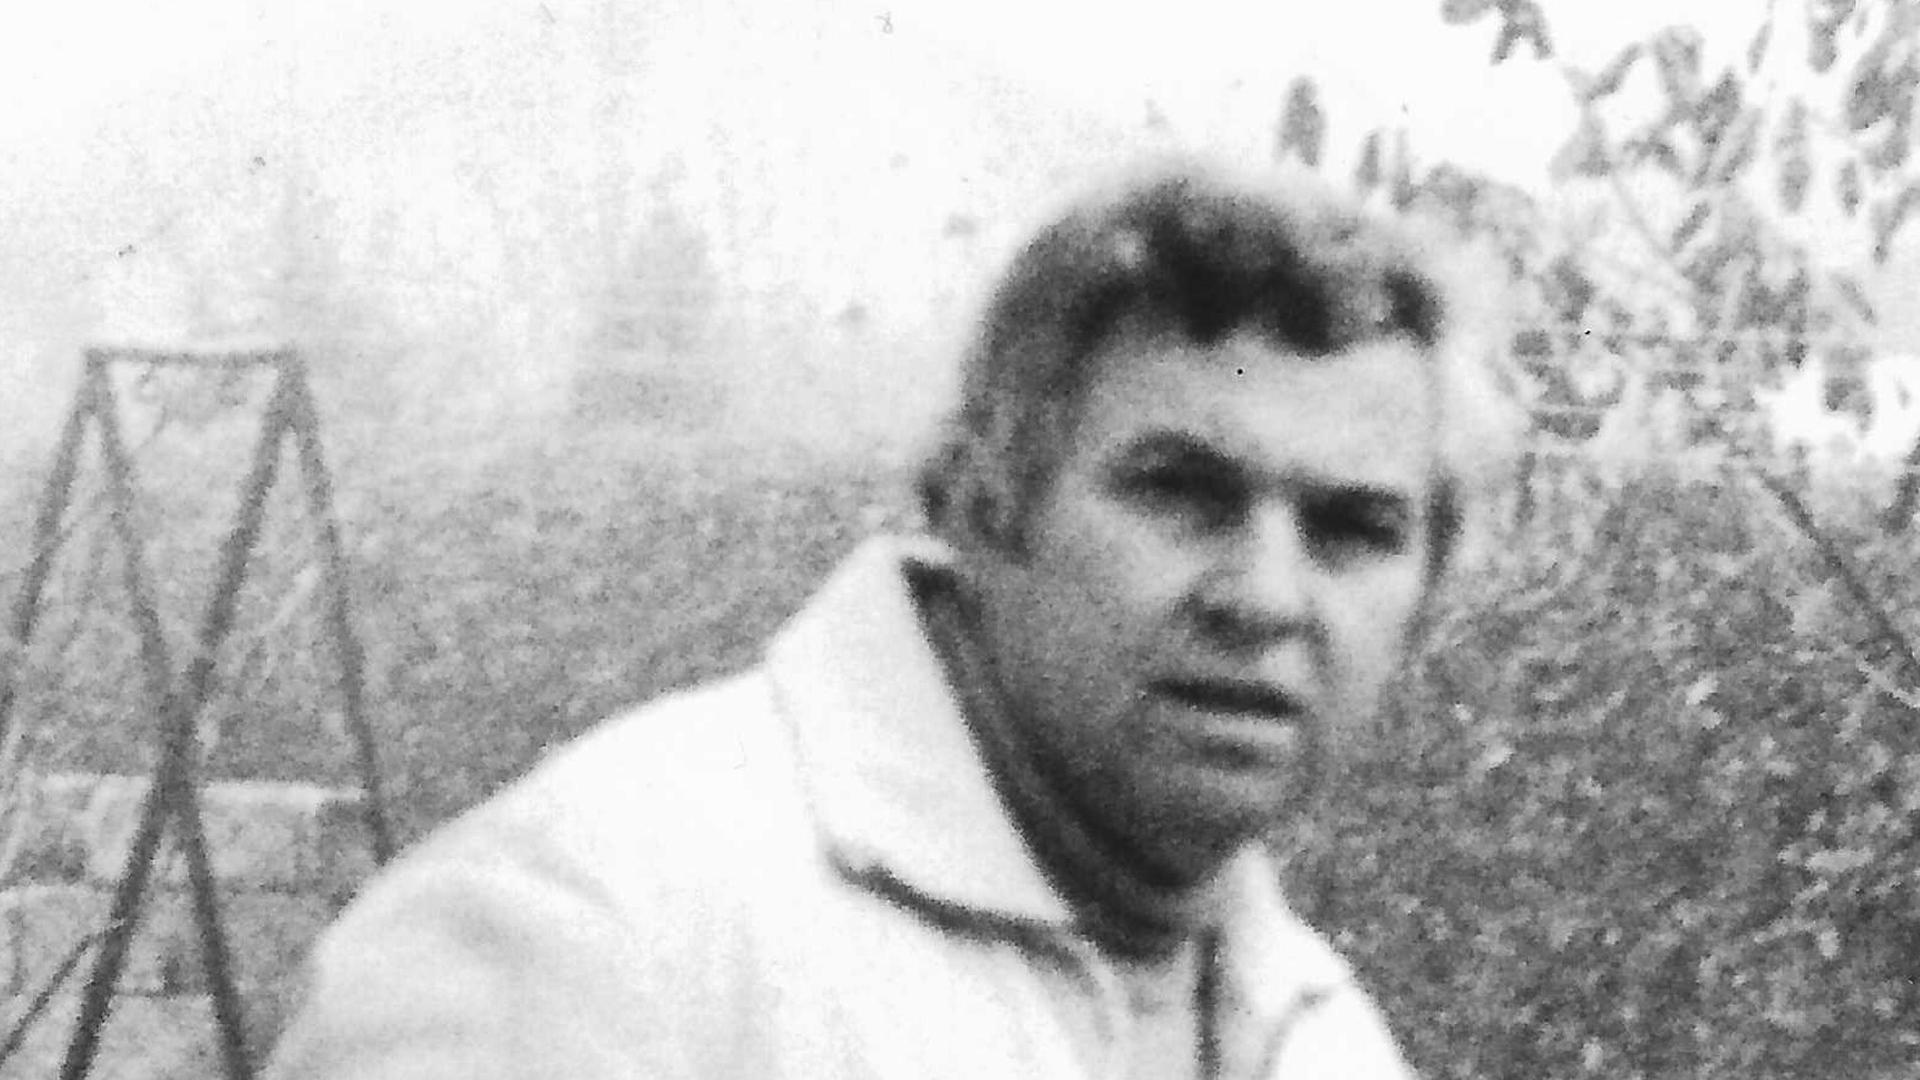 Vor 41 Jahren wurde der Freistetter Arzt Karl-Heinz Welsche entführt und ermordet. Die Kriminalpolizei ist nach der Tat Tausenden von Spuren nachgegangen – ohne Erfolg